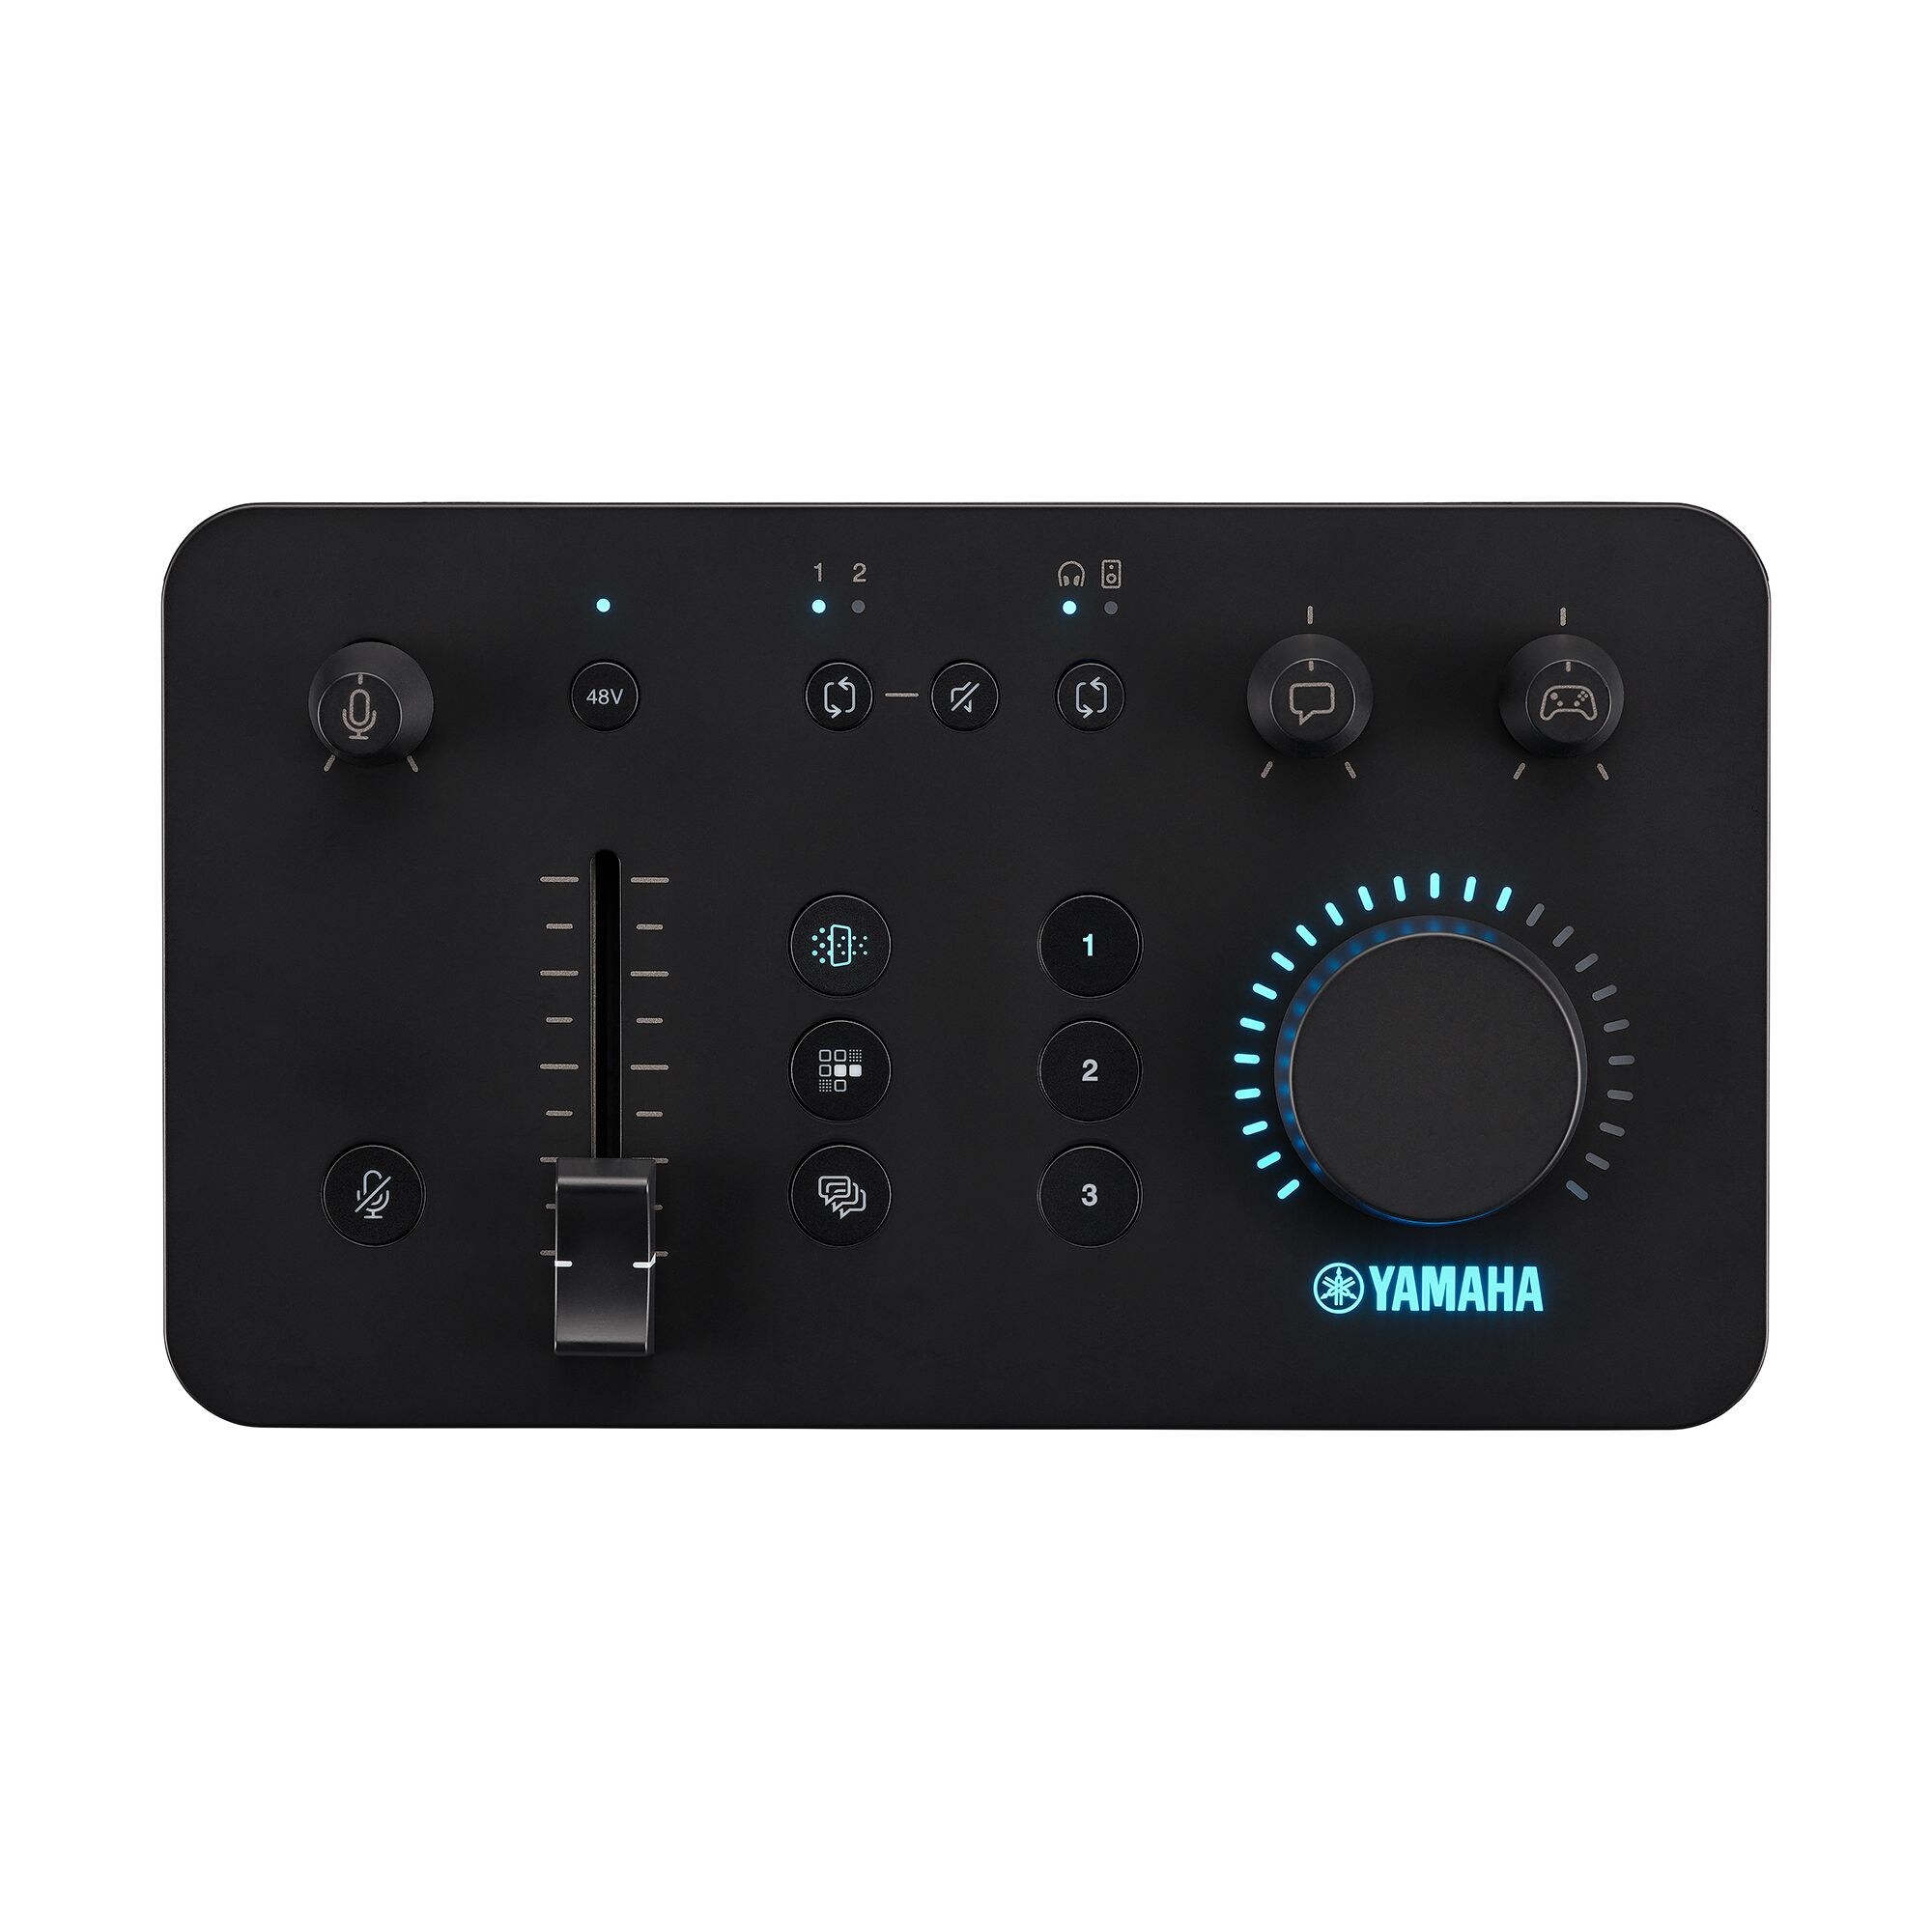 ZG01 Pack Gaming Mixer & Headset Videos - Yamaha USA